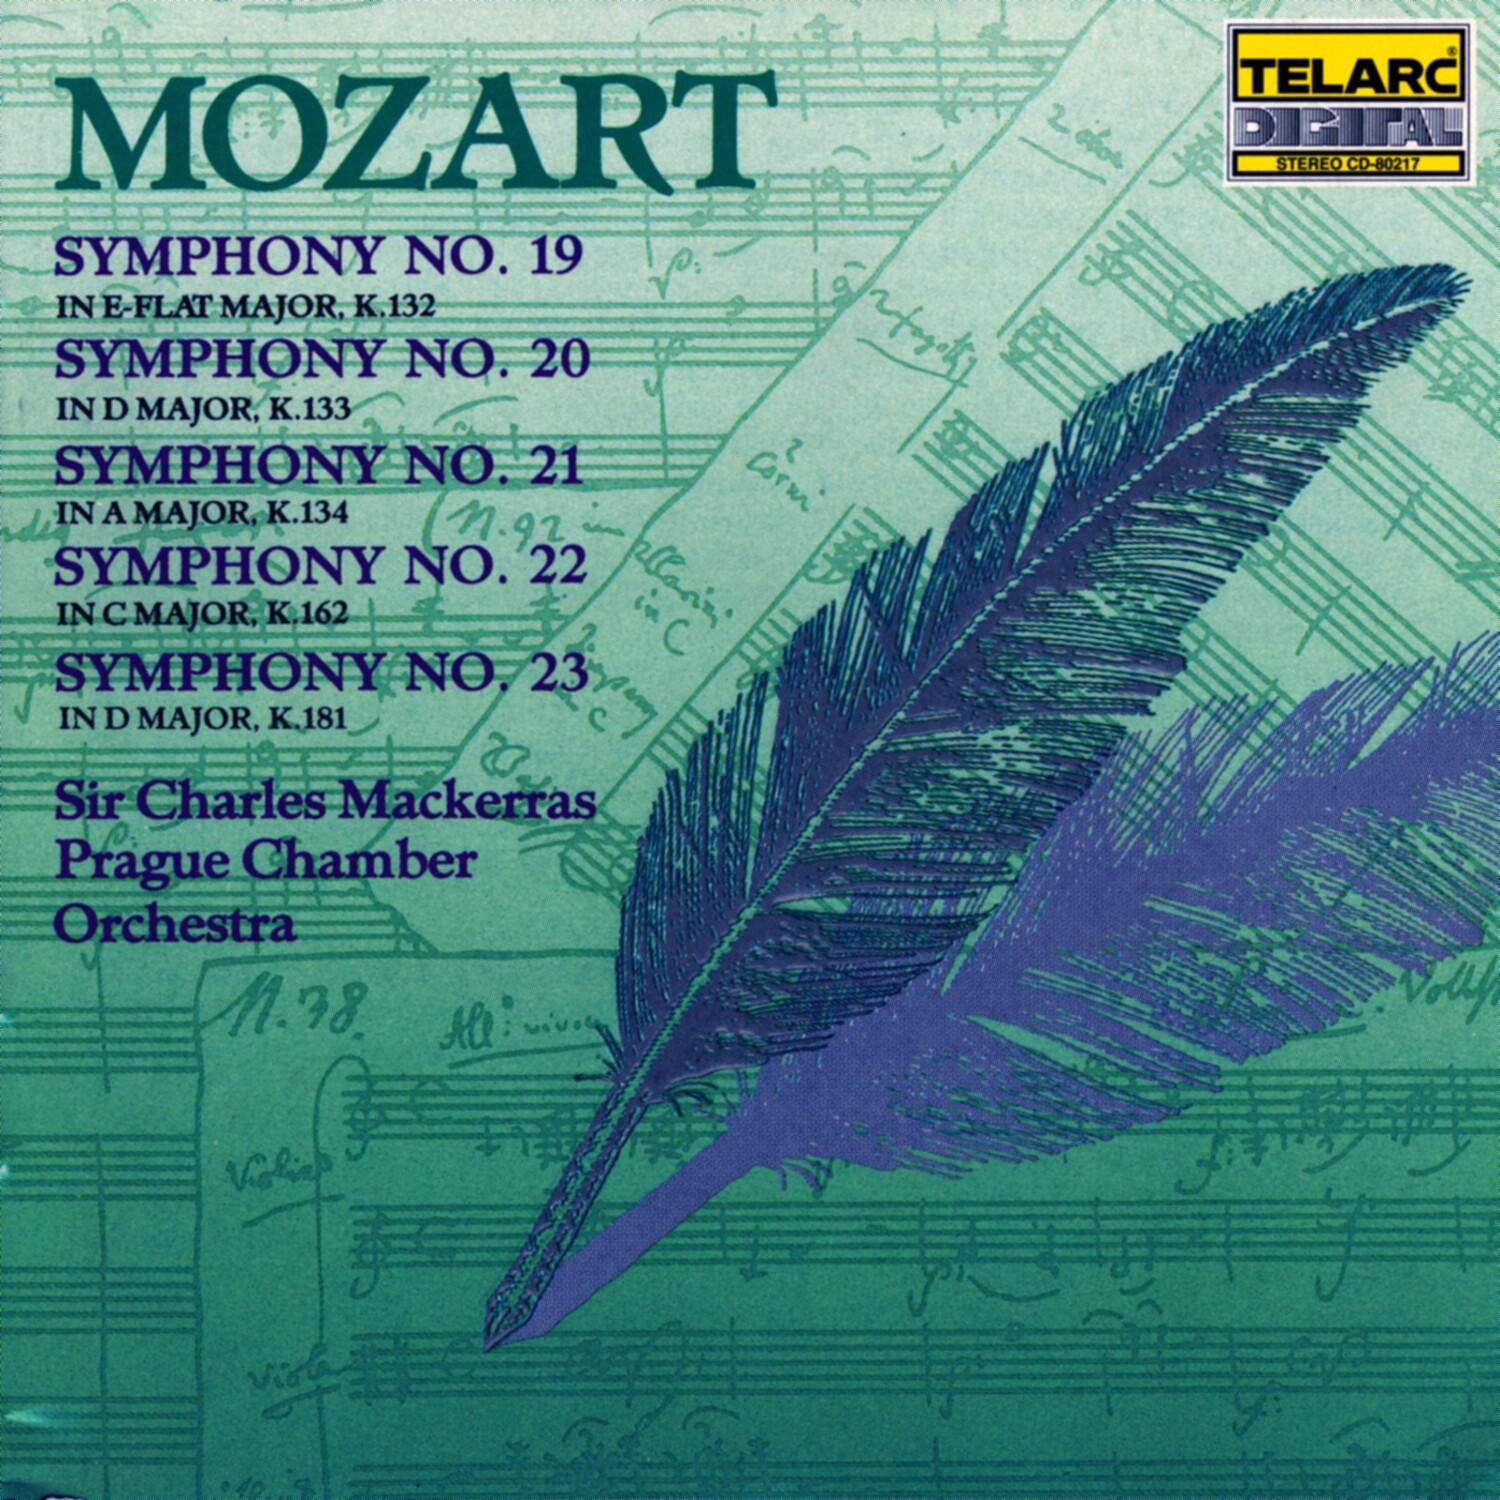 Symphony No. 20 in D major, K.133: I. Allegro